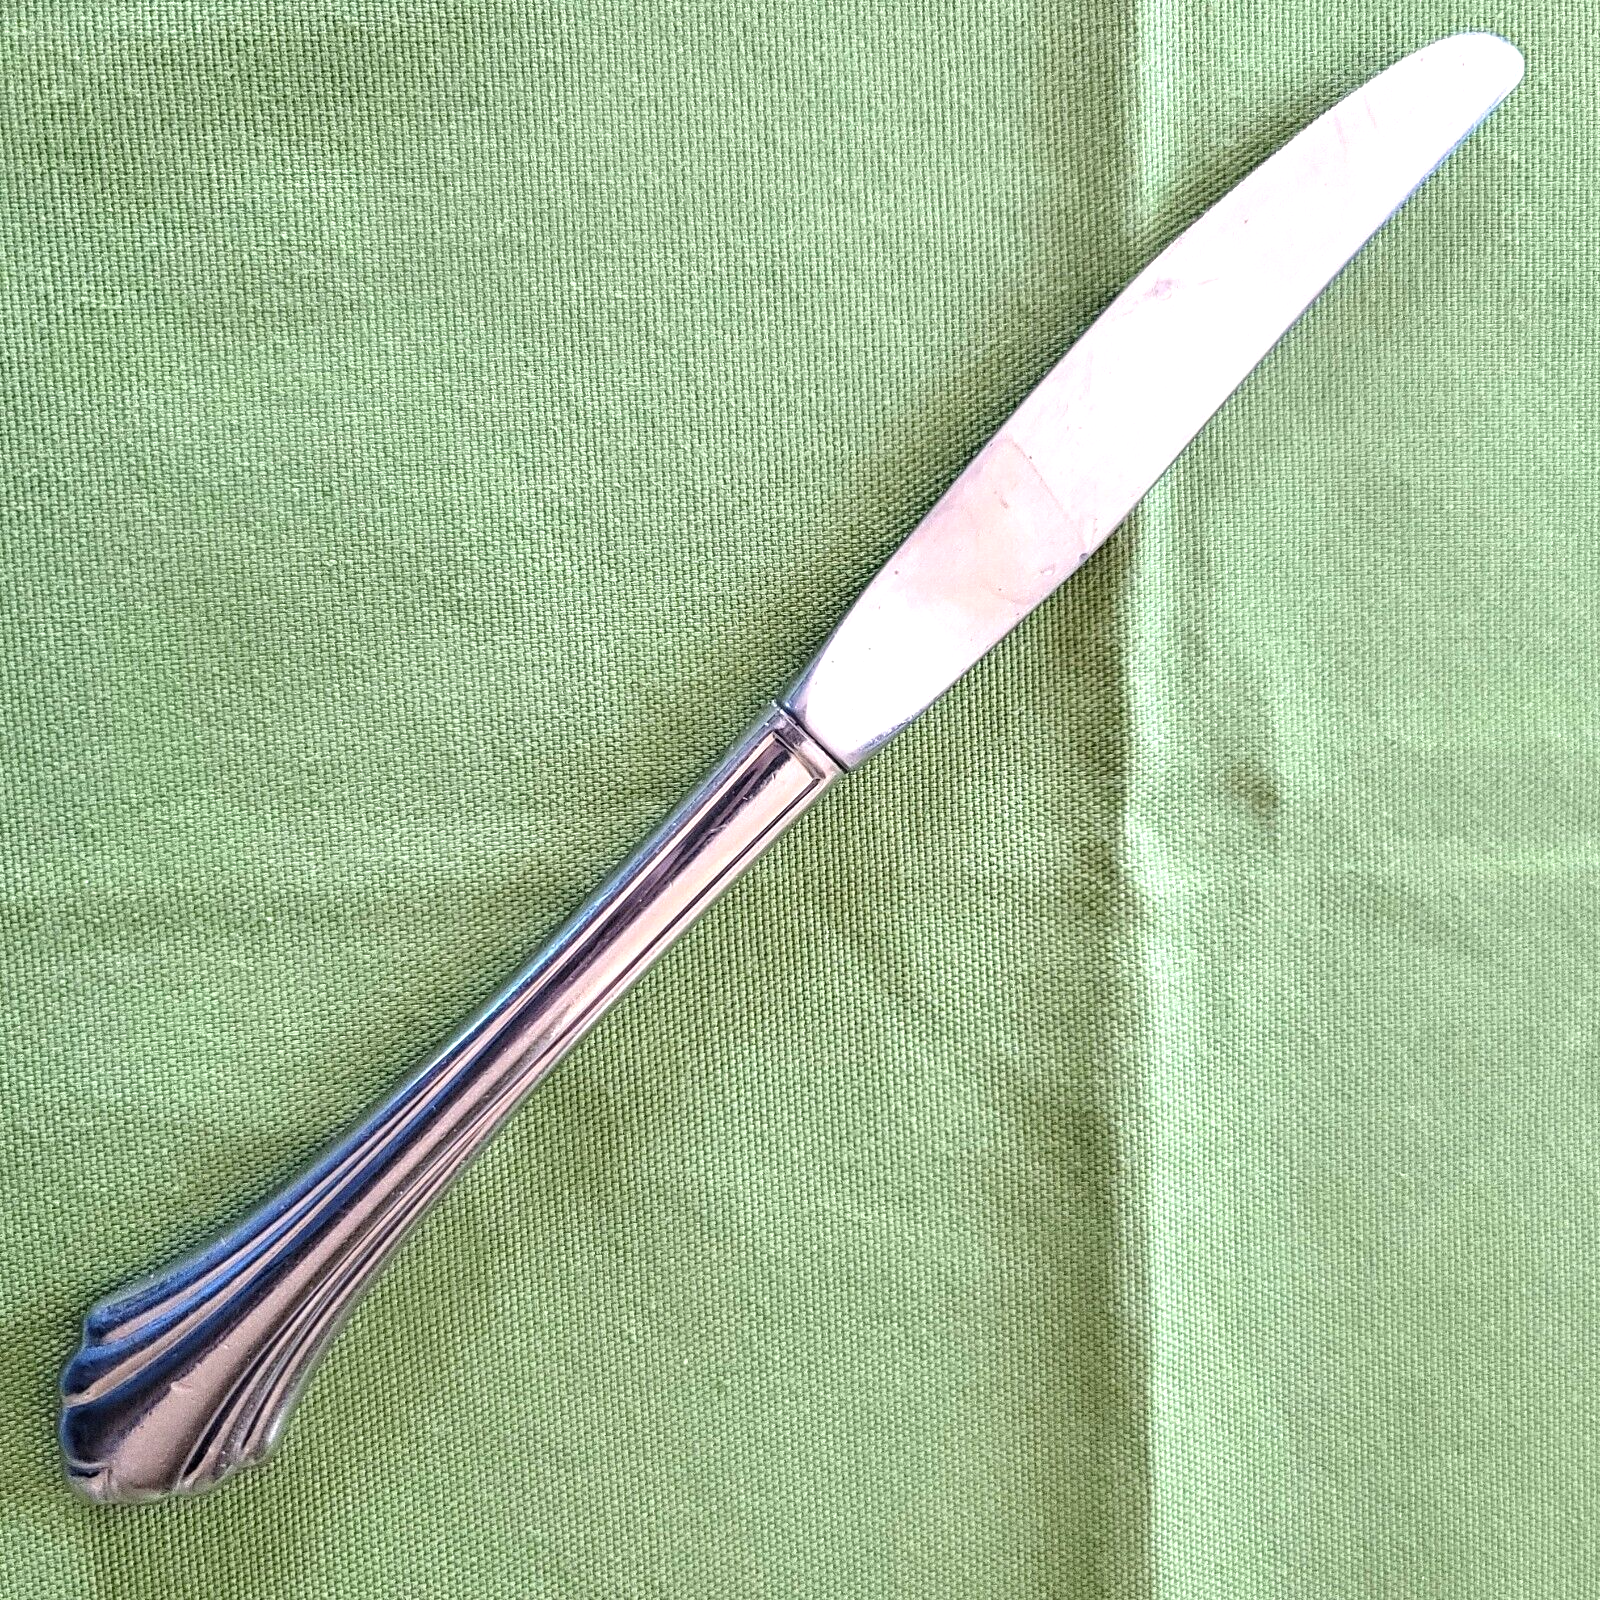 1 Dinner Knife Oneida Bancroft Stainless Steel 9 1/8" Ridged Flared Tip - $2.96